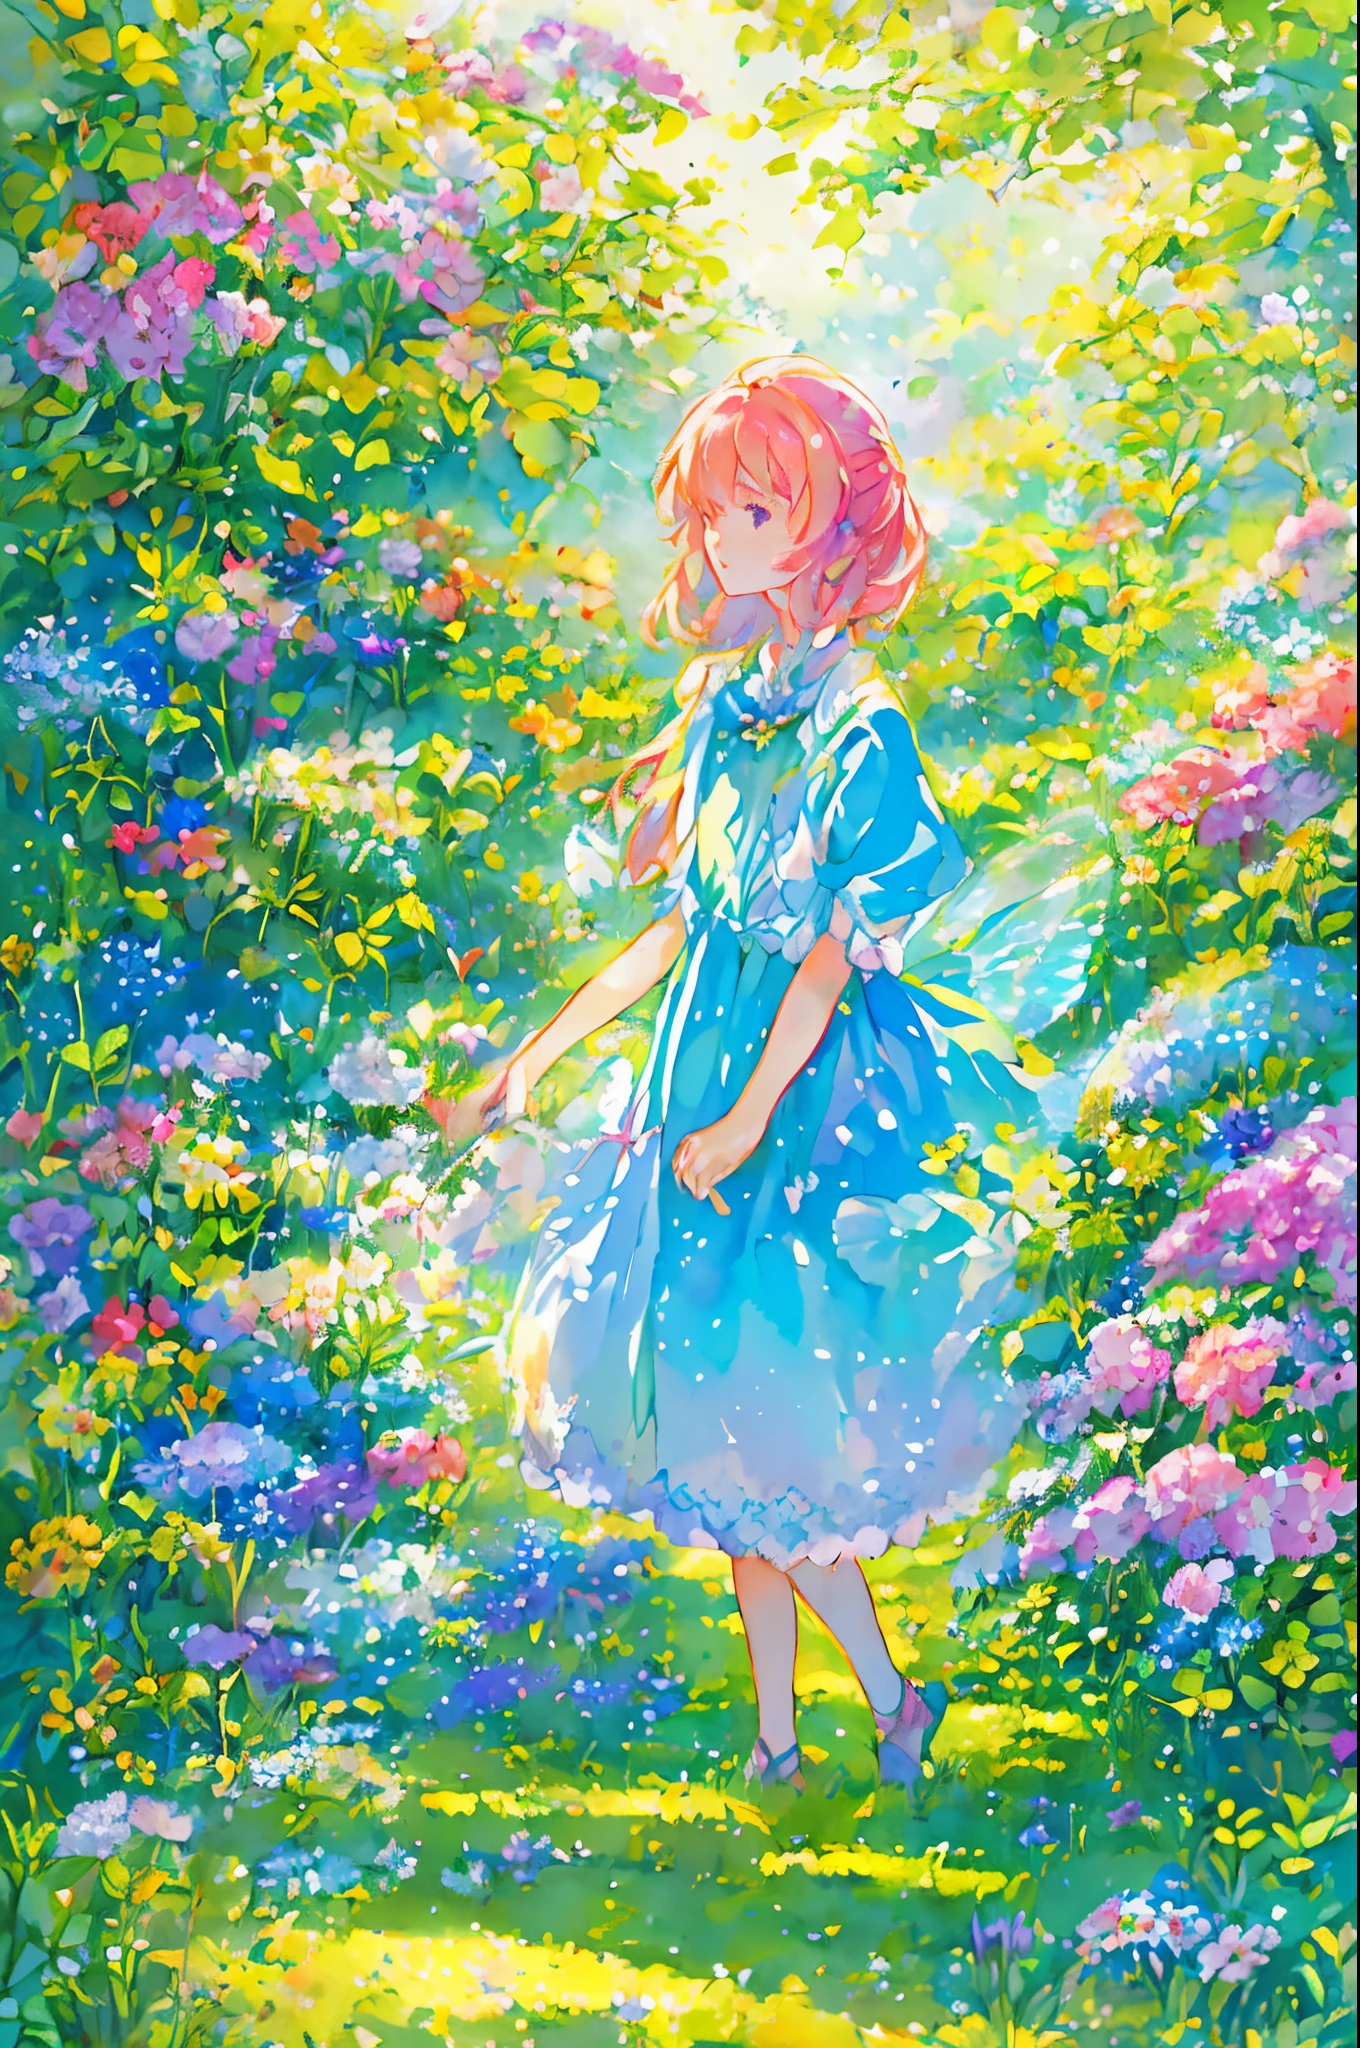 妖精の衣装を着た美しい少女, 花と蝶に囲まれて. コンテンツ: 水彩画. スタイル: 気まぐれで繊細, 児童書のイラストのように.